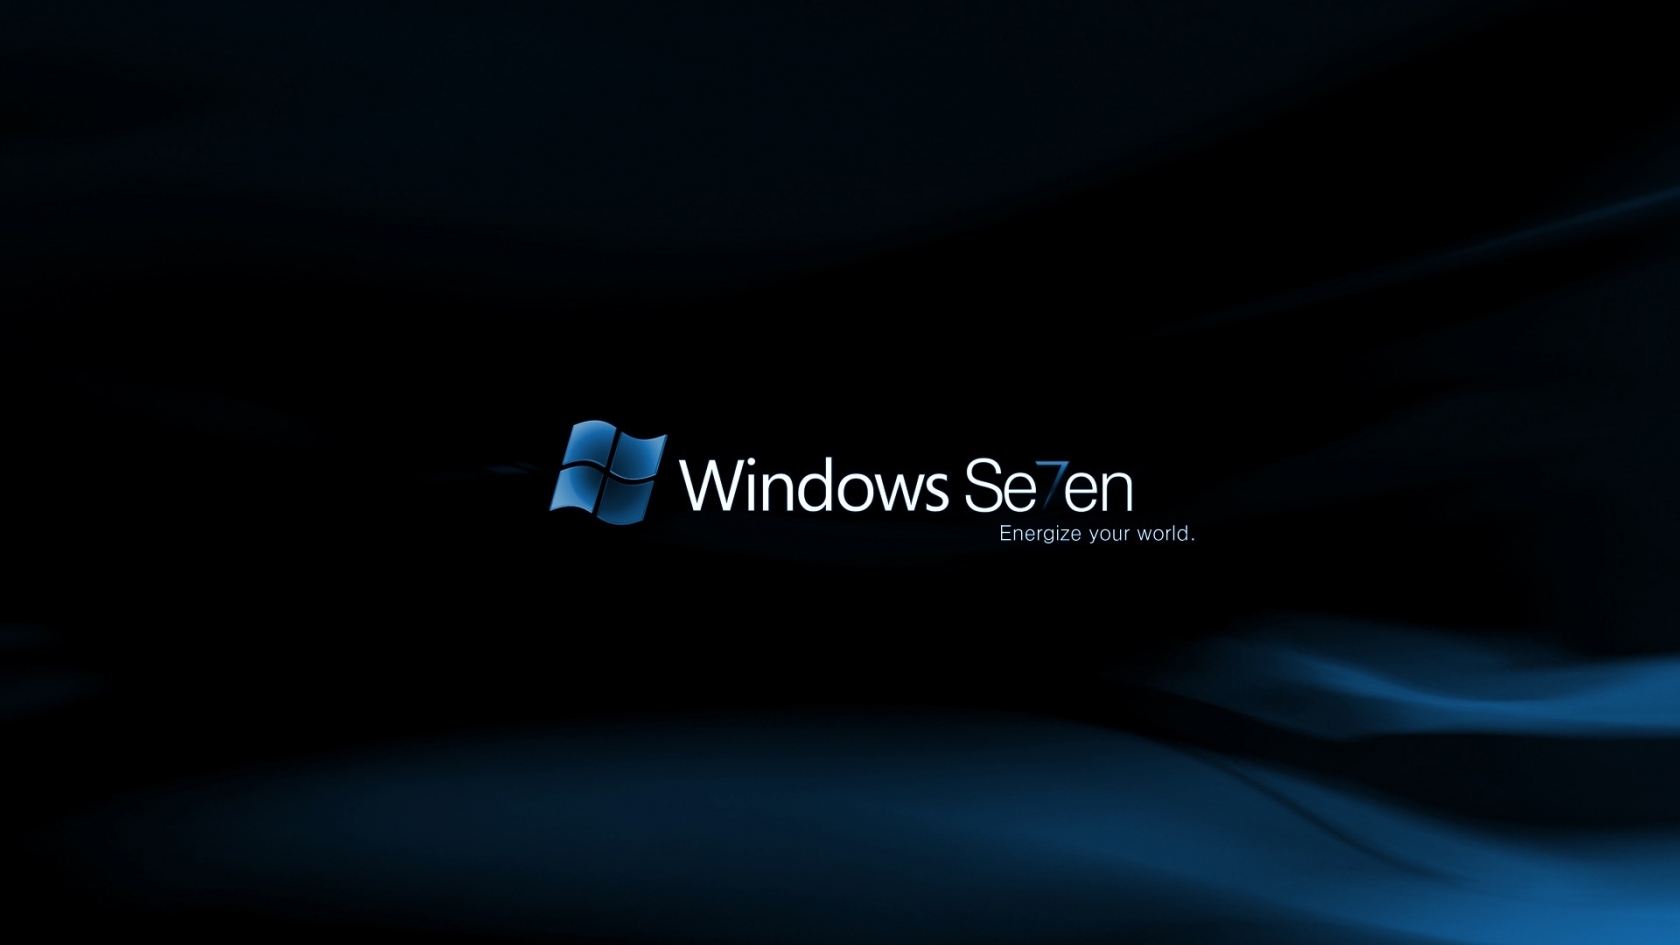 Windows Se7en Midnight for 1680 x 945 HDTV resolution